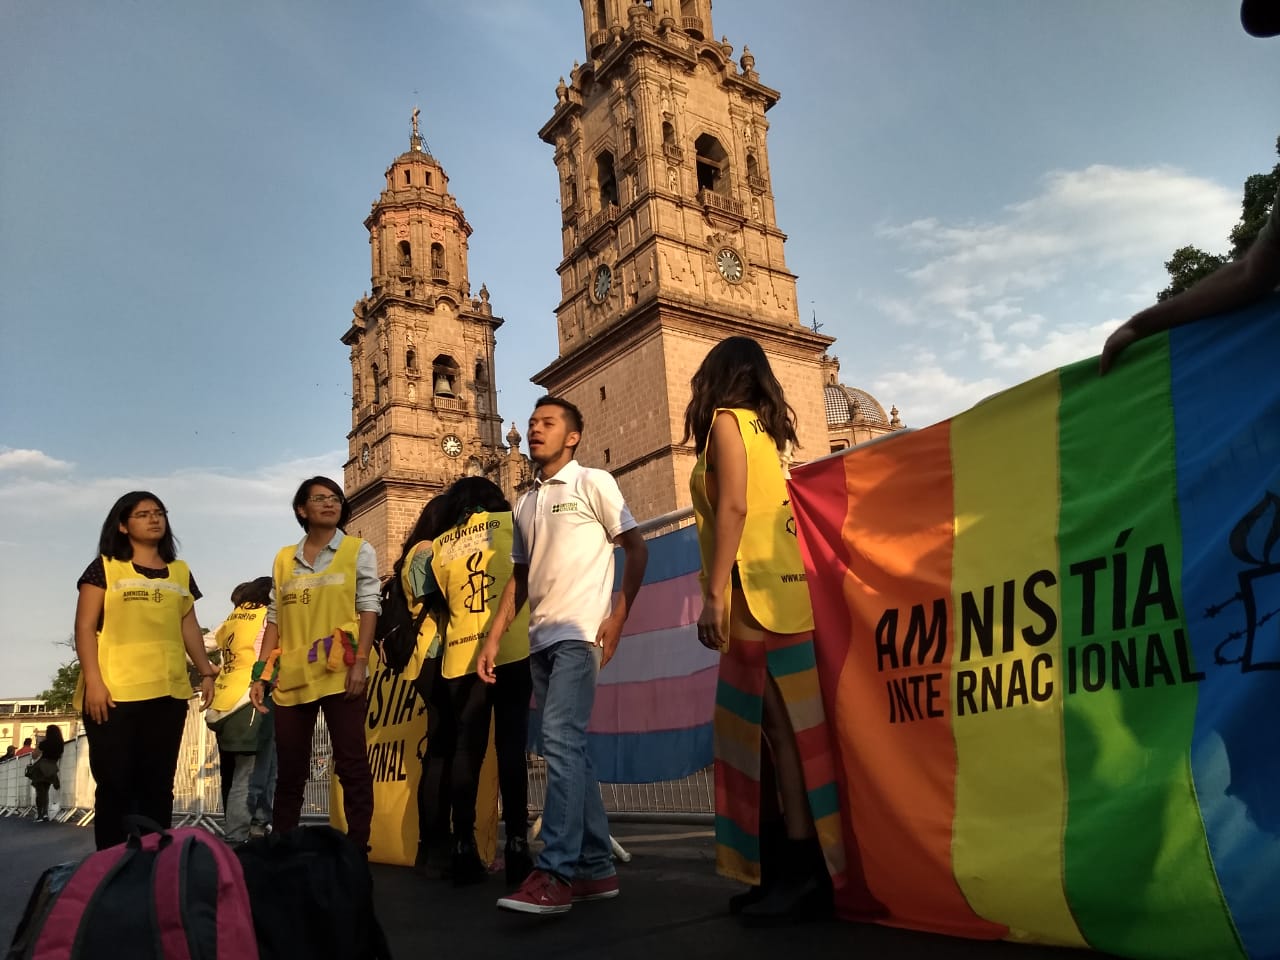 Mucho por trabajar en tema de homofobia en Michoacán: comunidad LGBT